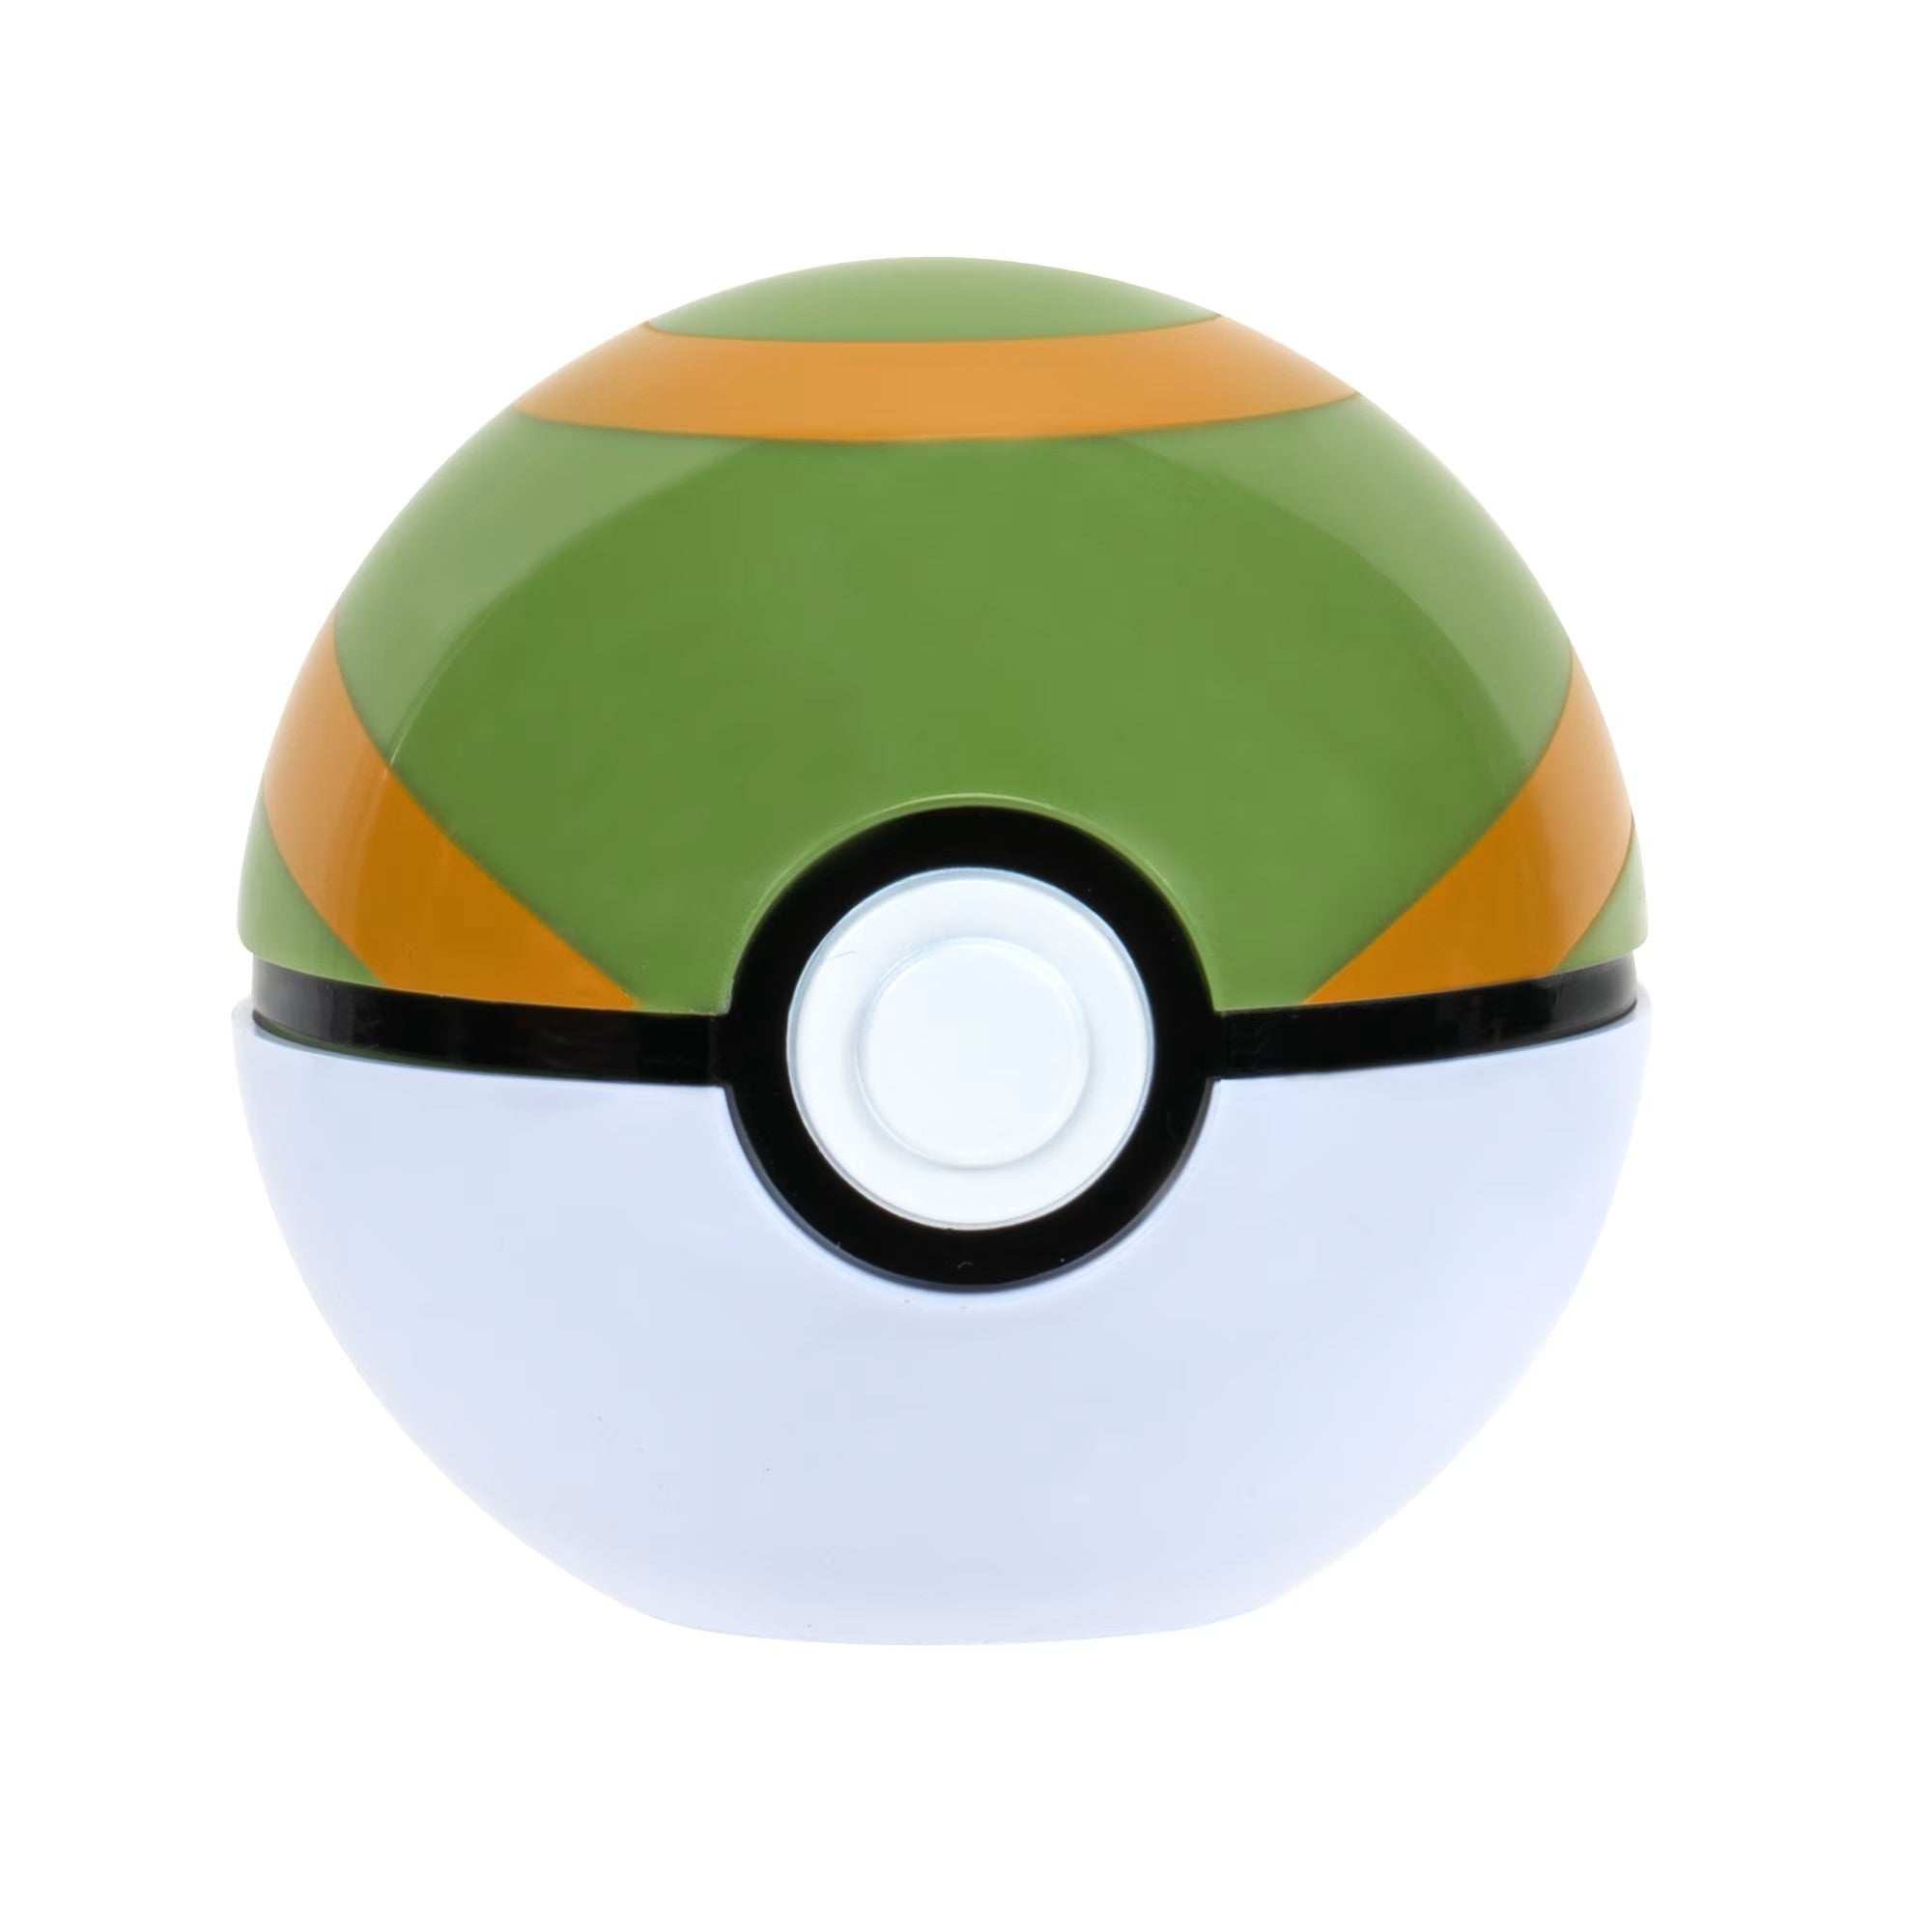 Pokémon Figurine - Clip 'N' Go - Mankey + Nest Ball - Jazwares